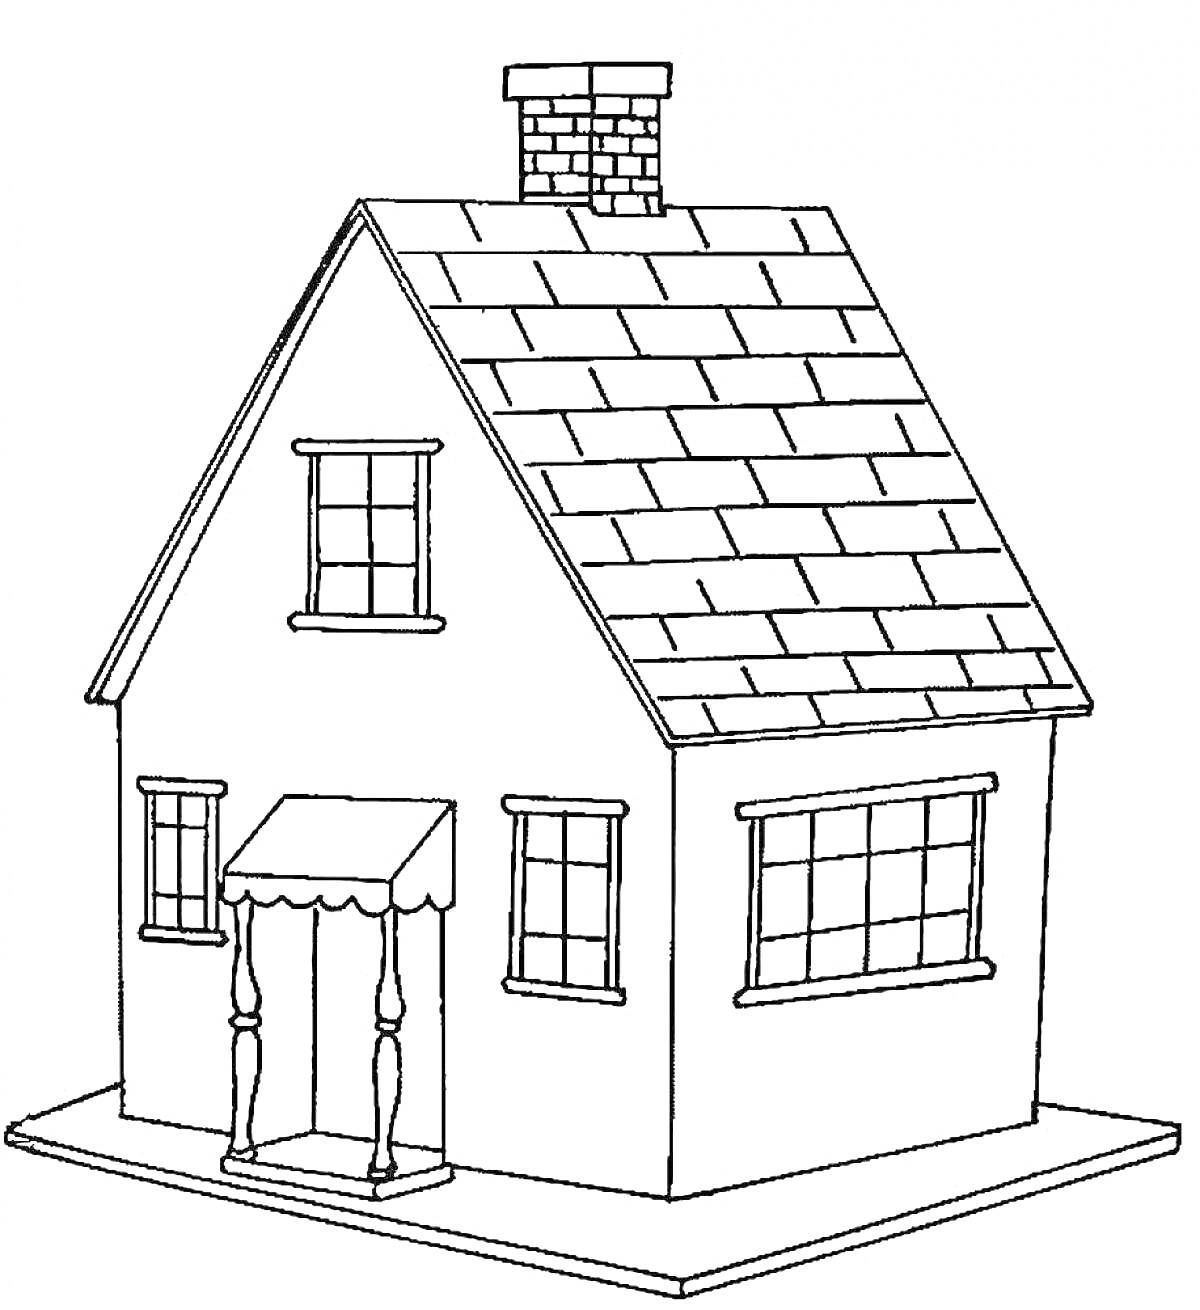 Дом с двускатной крышей, крыльцом с козырьком, дымоходом и окнами